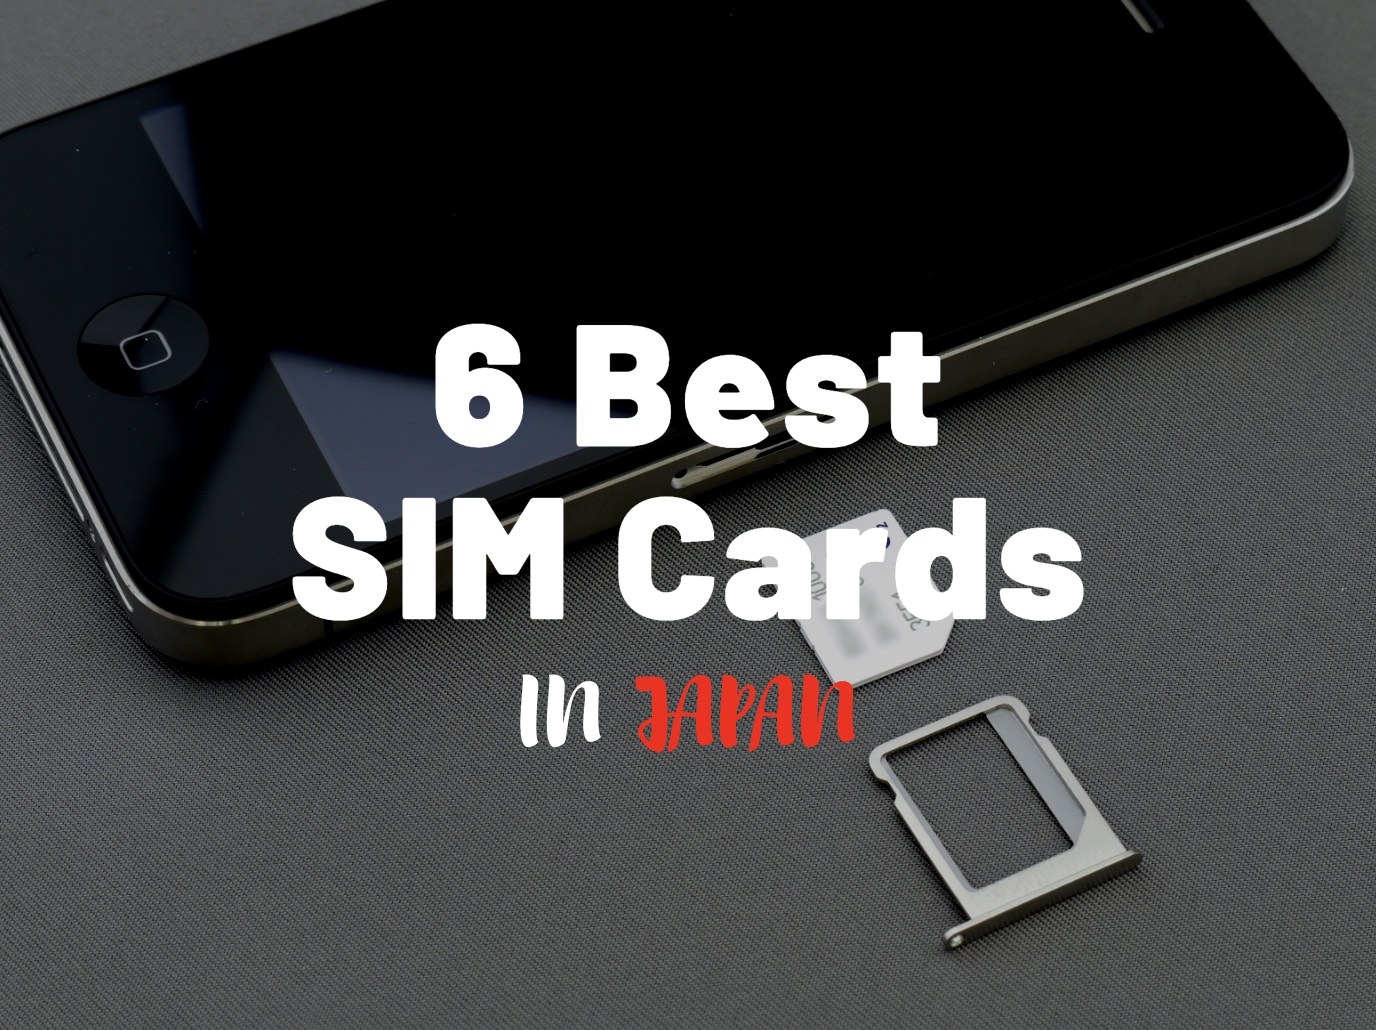 Best SIM Cards in Japan